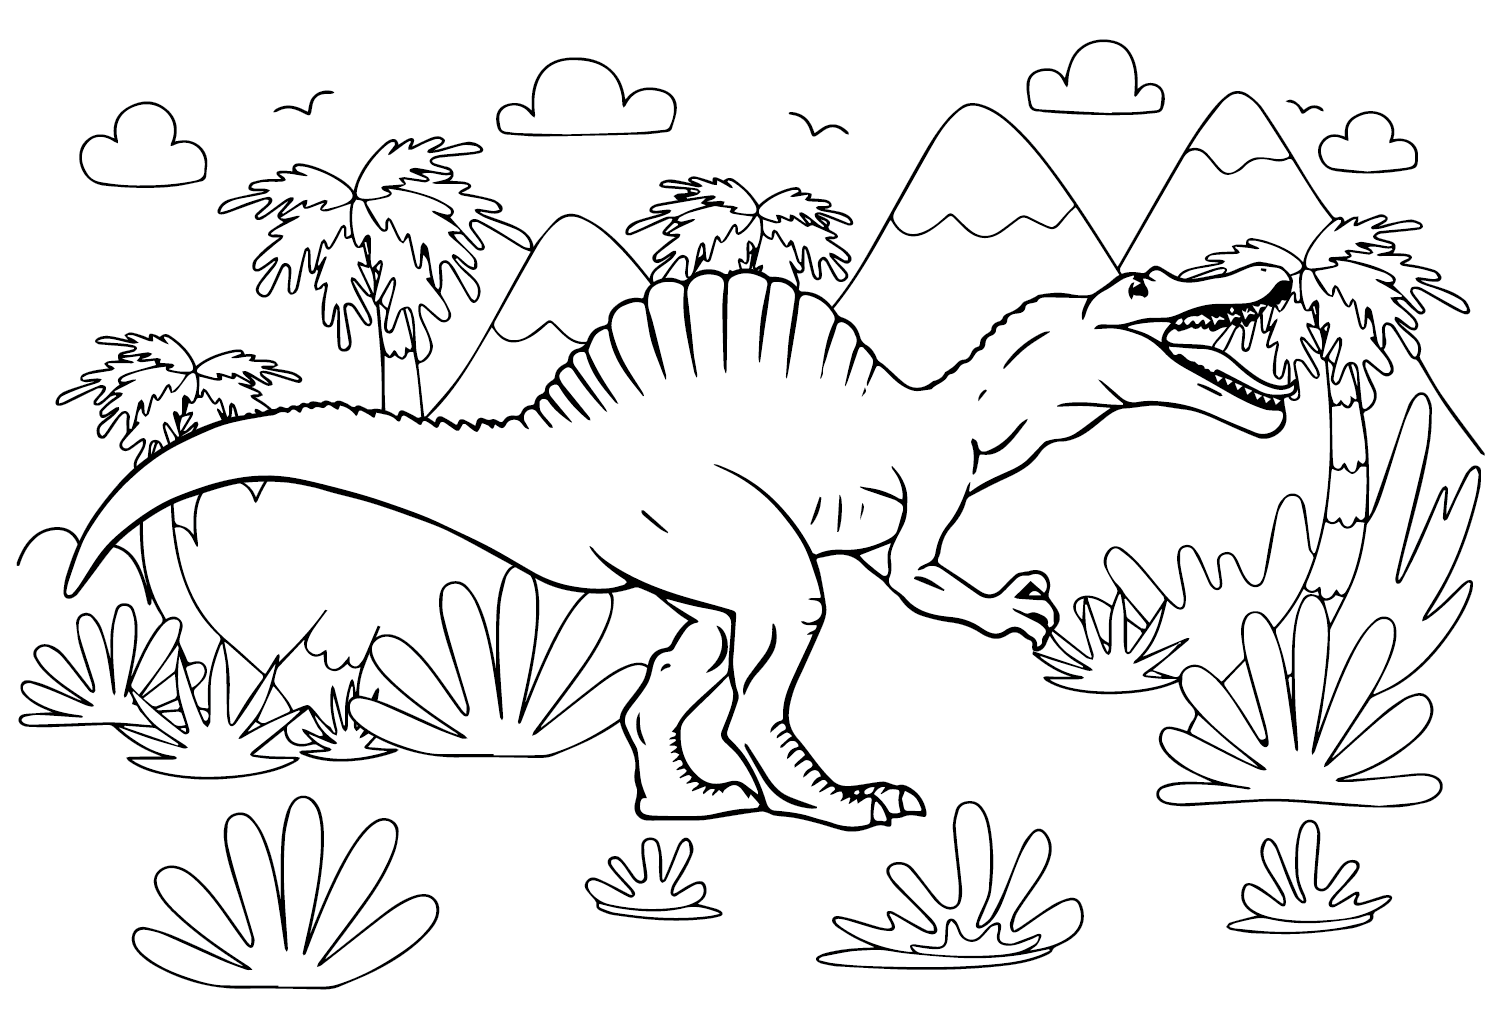 Afbeeldingen Spinosaurus Aegyptiacus kleurplaat van Spinosaurus Aegyptiacus